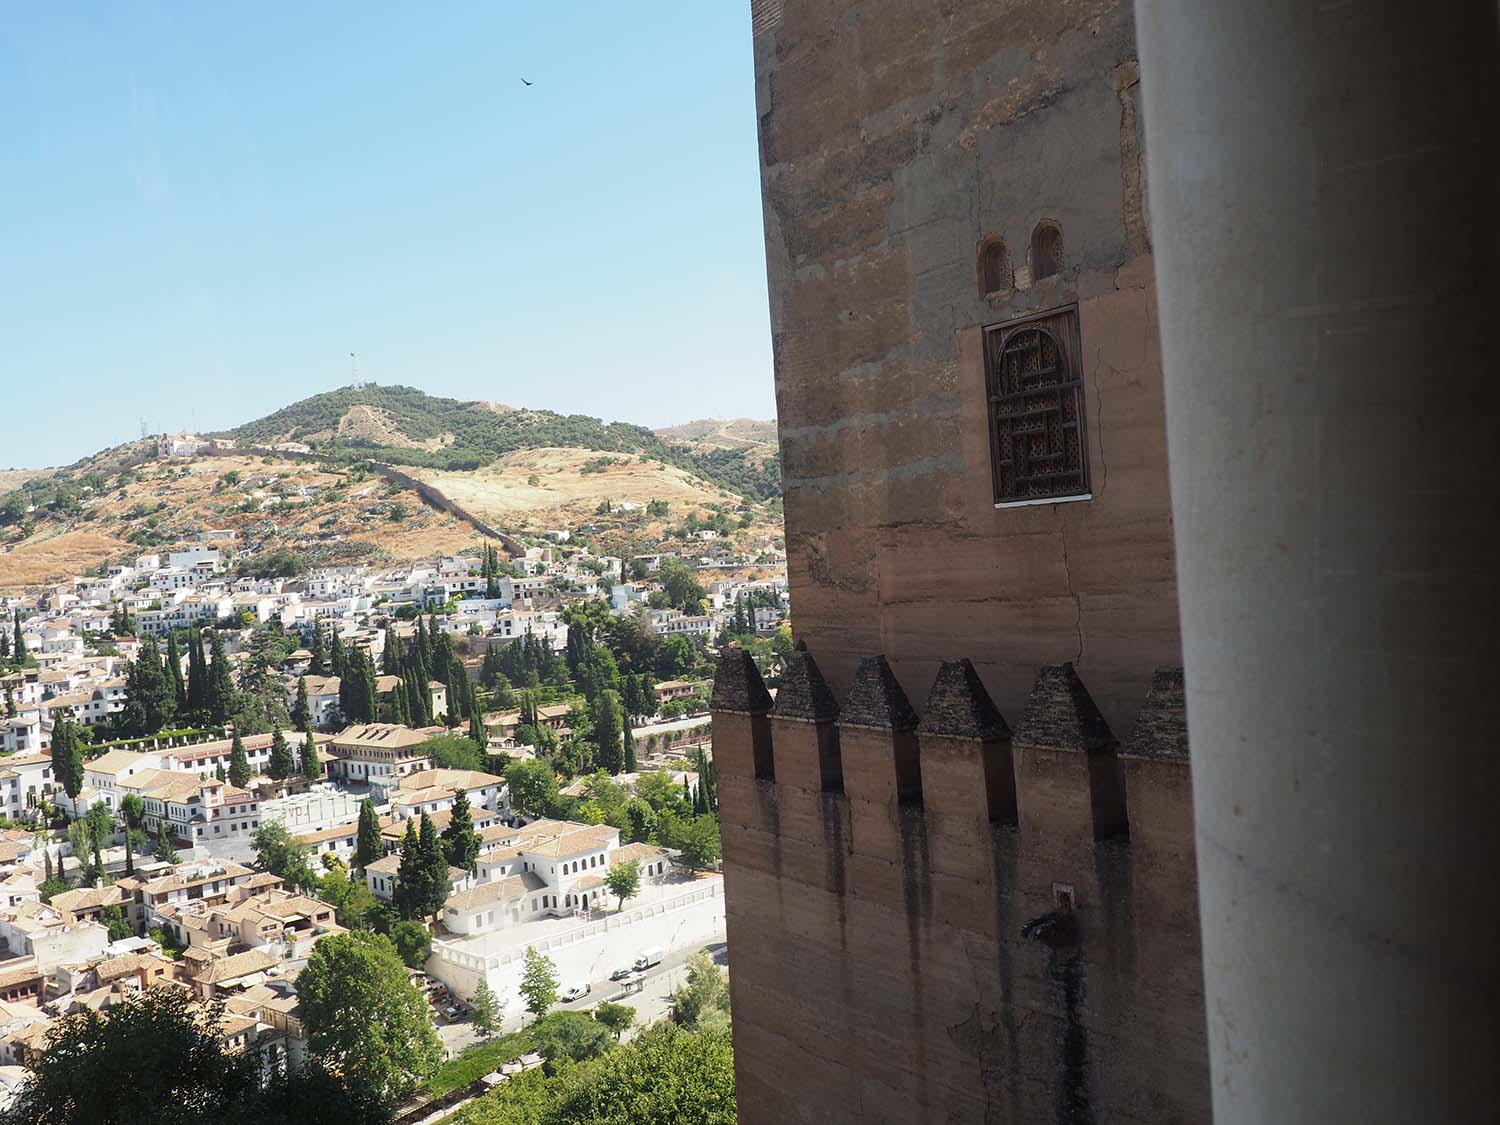 View of Granada and the Torre de Comares from the Cuarto Dorado